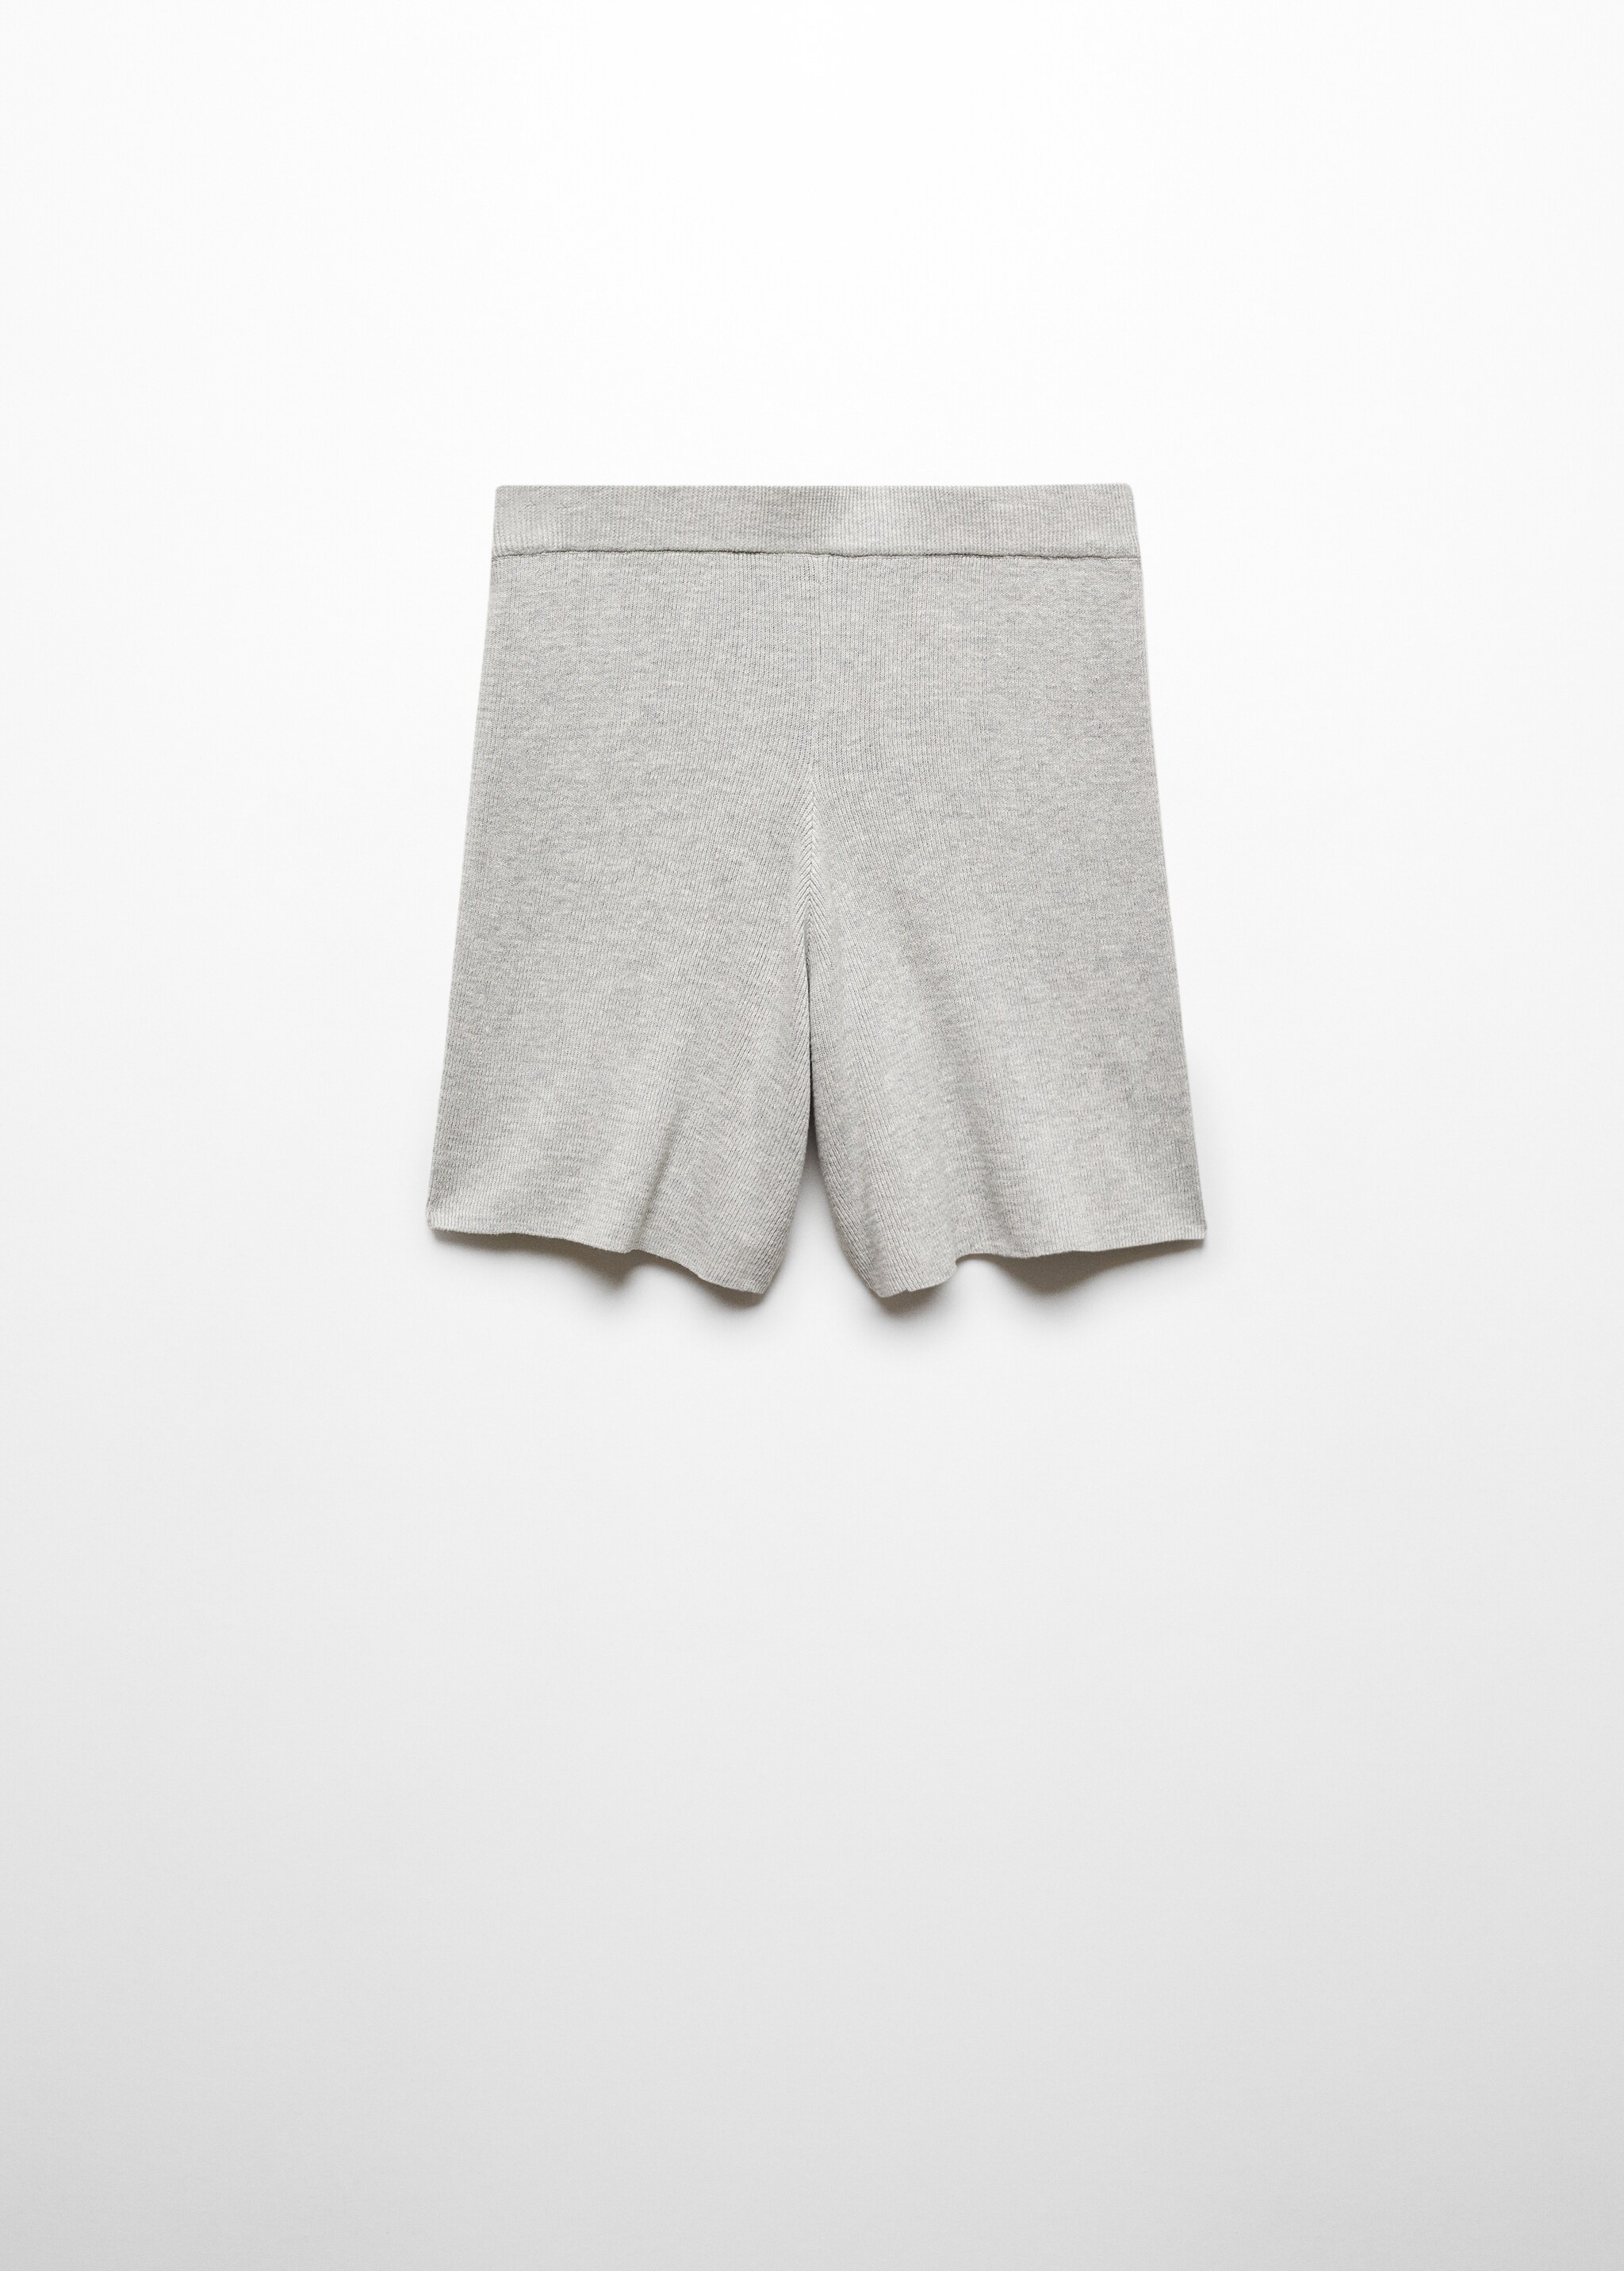 Shorts pijama punto algodón lino - Artículo sin modelo